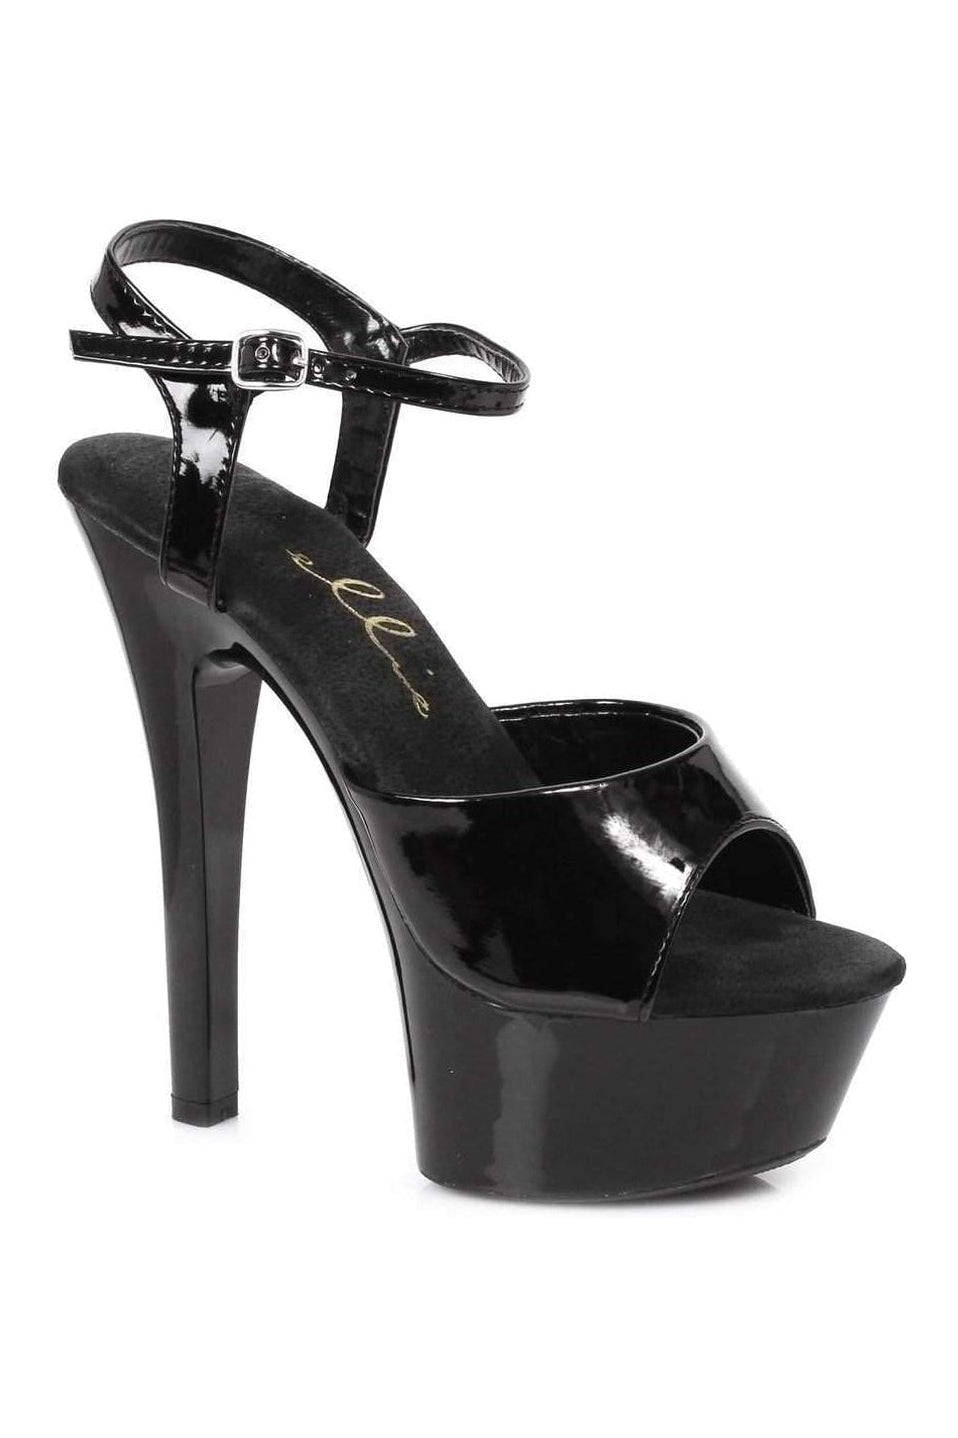 601-JULIET Platform Sandal | Black Patent-Ellie Shoes-Black-Sandals-SEXYSHOES.COM